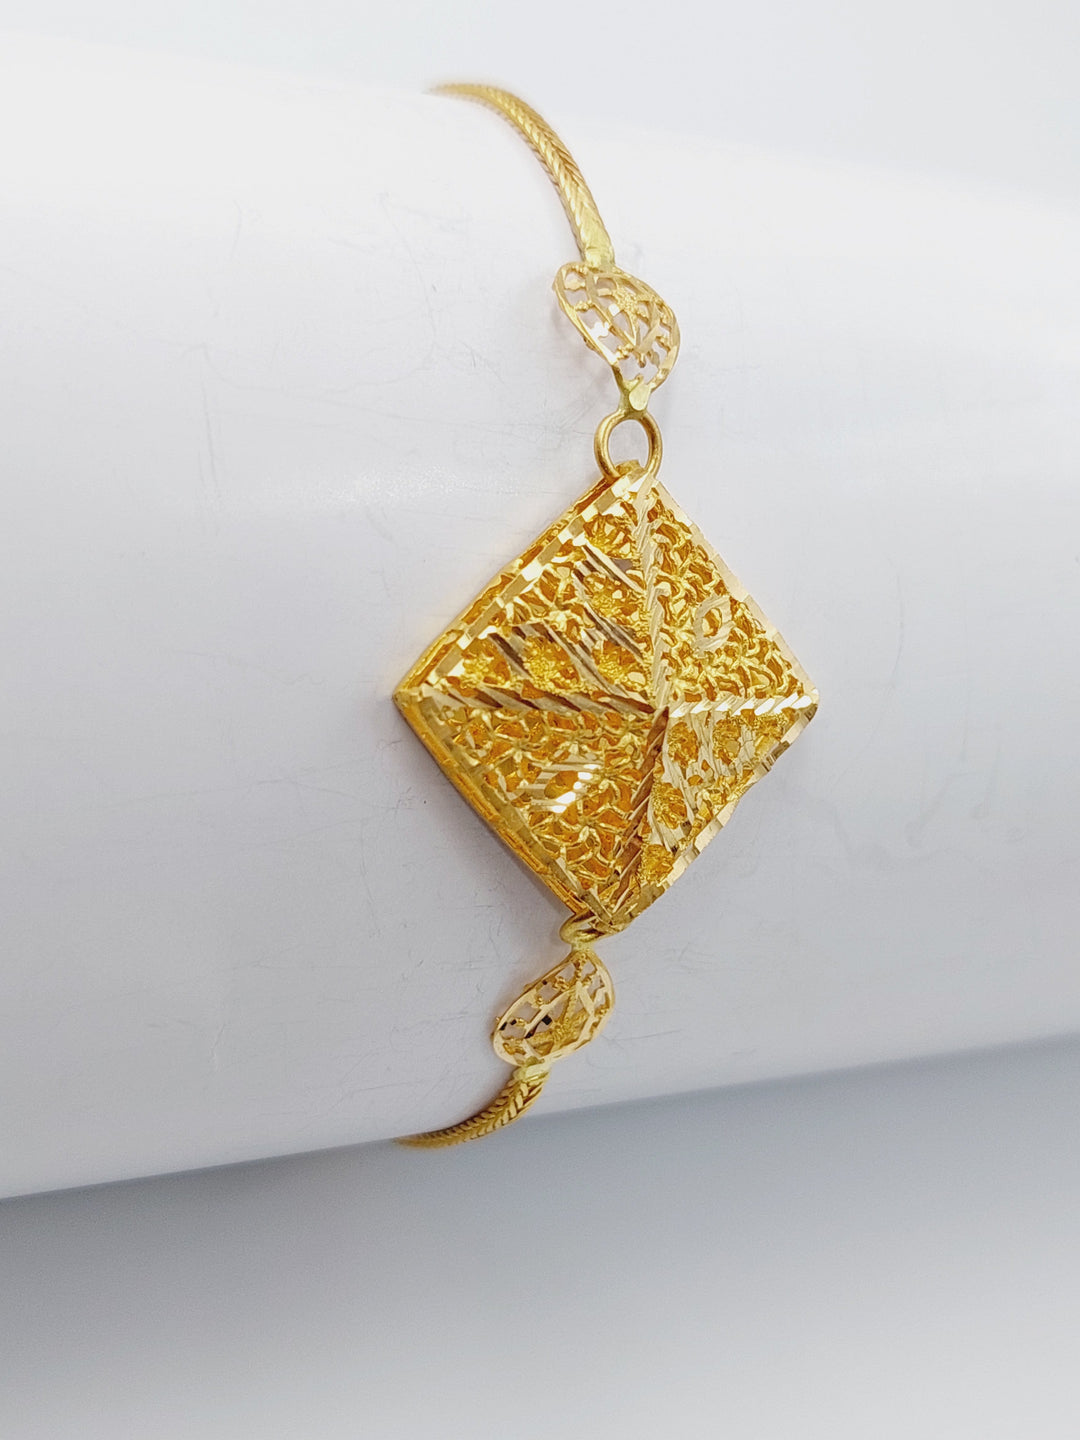 21K Gold Bahraini Bracelet by Saeed Jewelry - Image 1